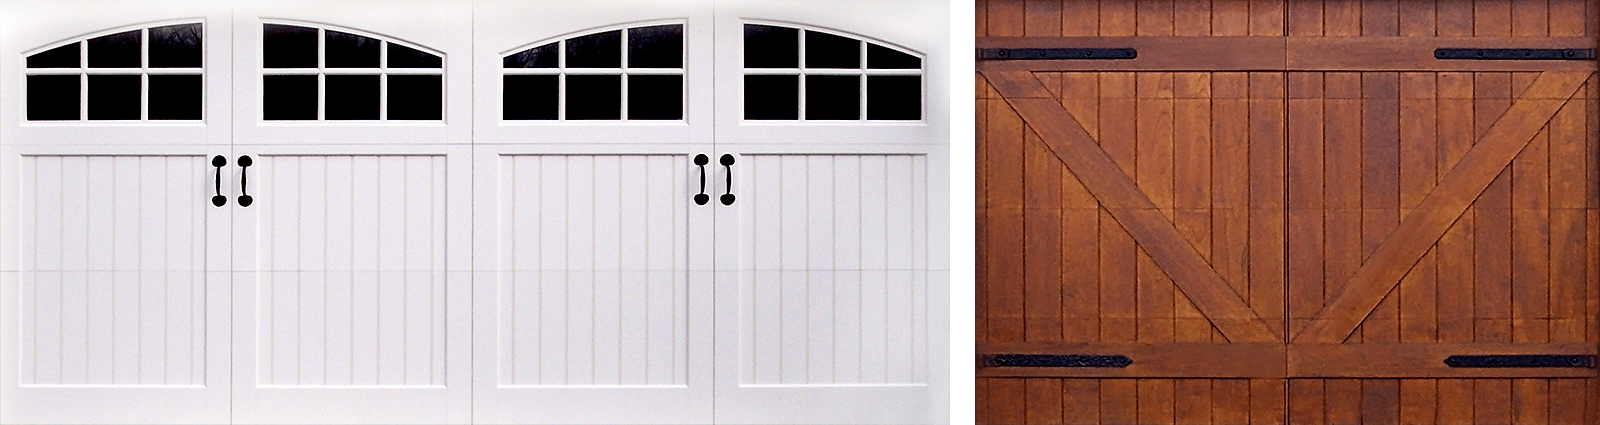 Decorative Garage Door Hardware, Faux Garage Door Hinges And Handles